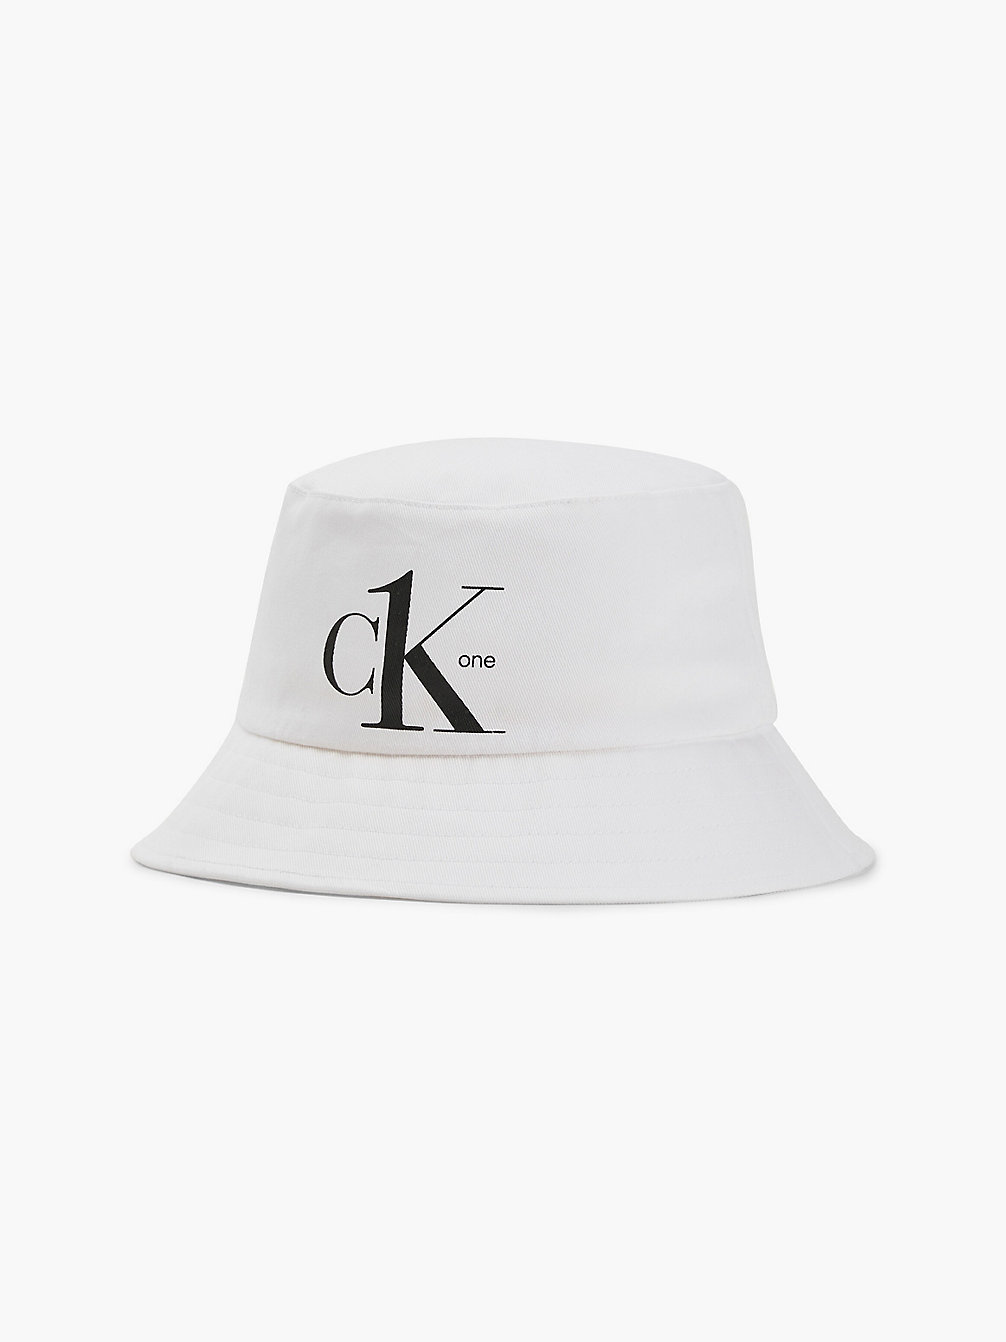 PVH CLASSIC WHITE Bucket Hat Aus Bio-Baumwolle - CK One undefined unisex Calvin Klein